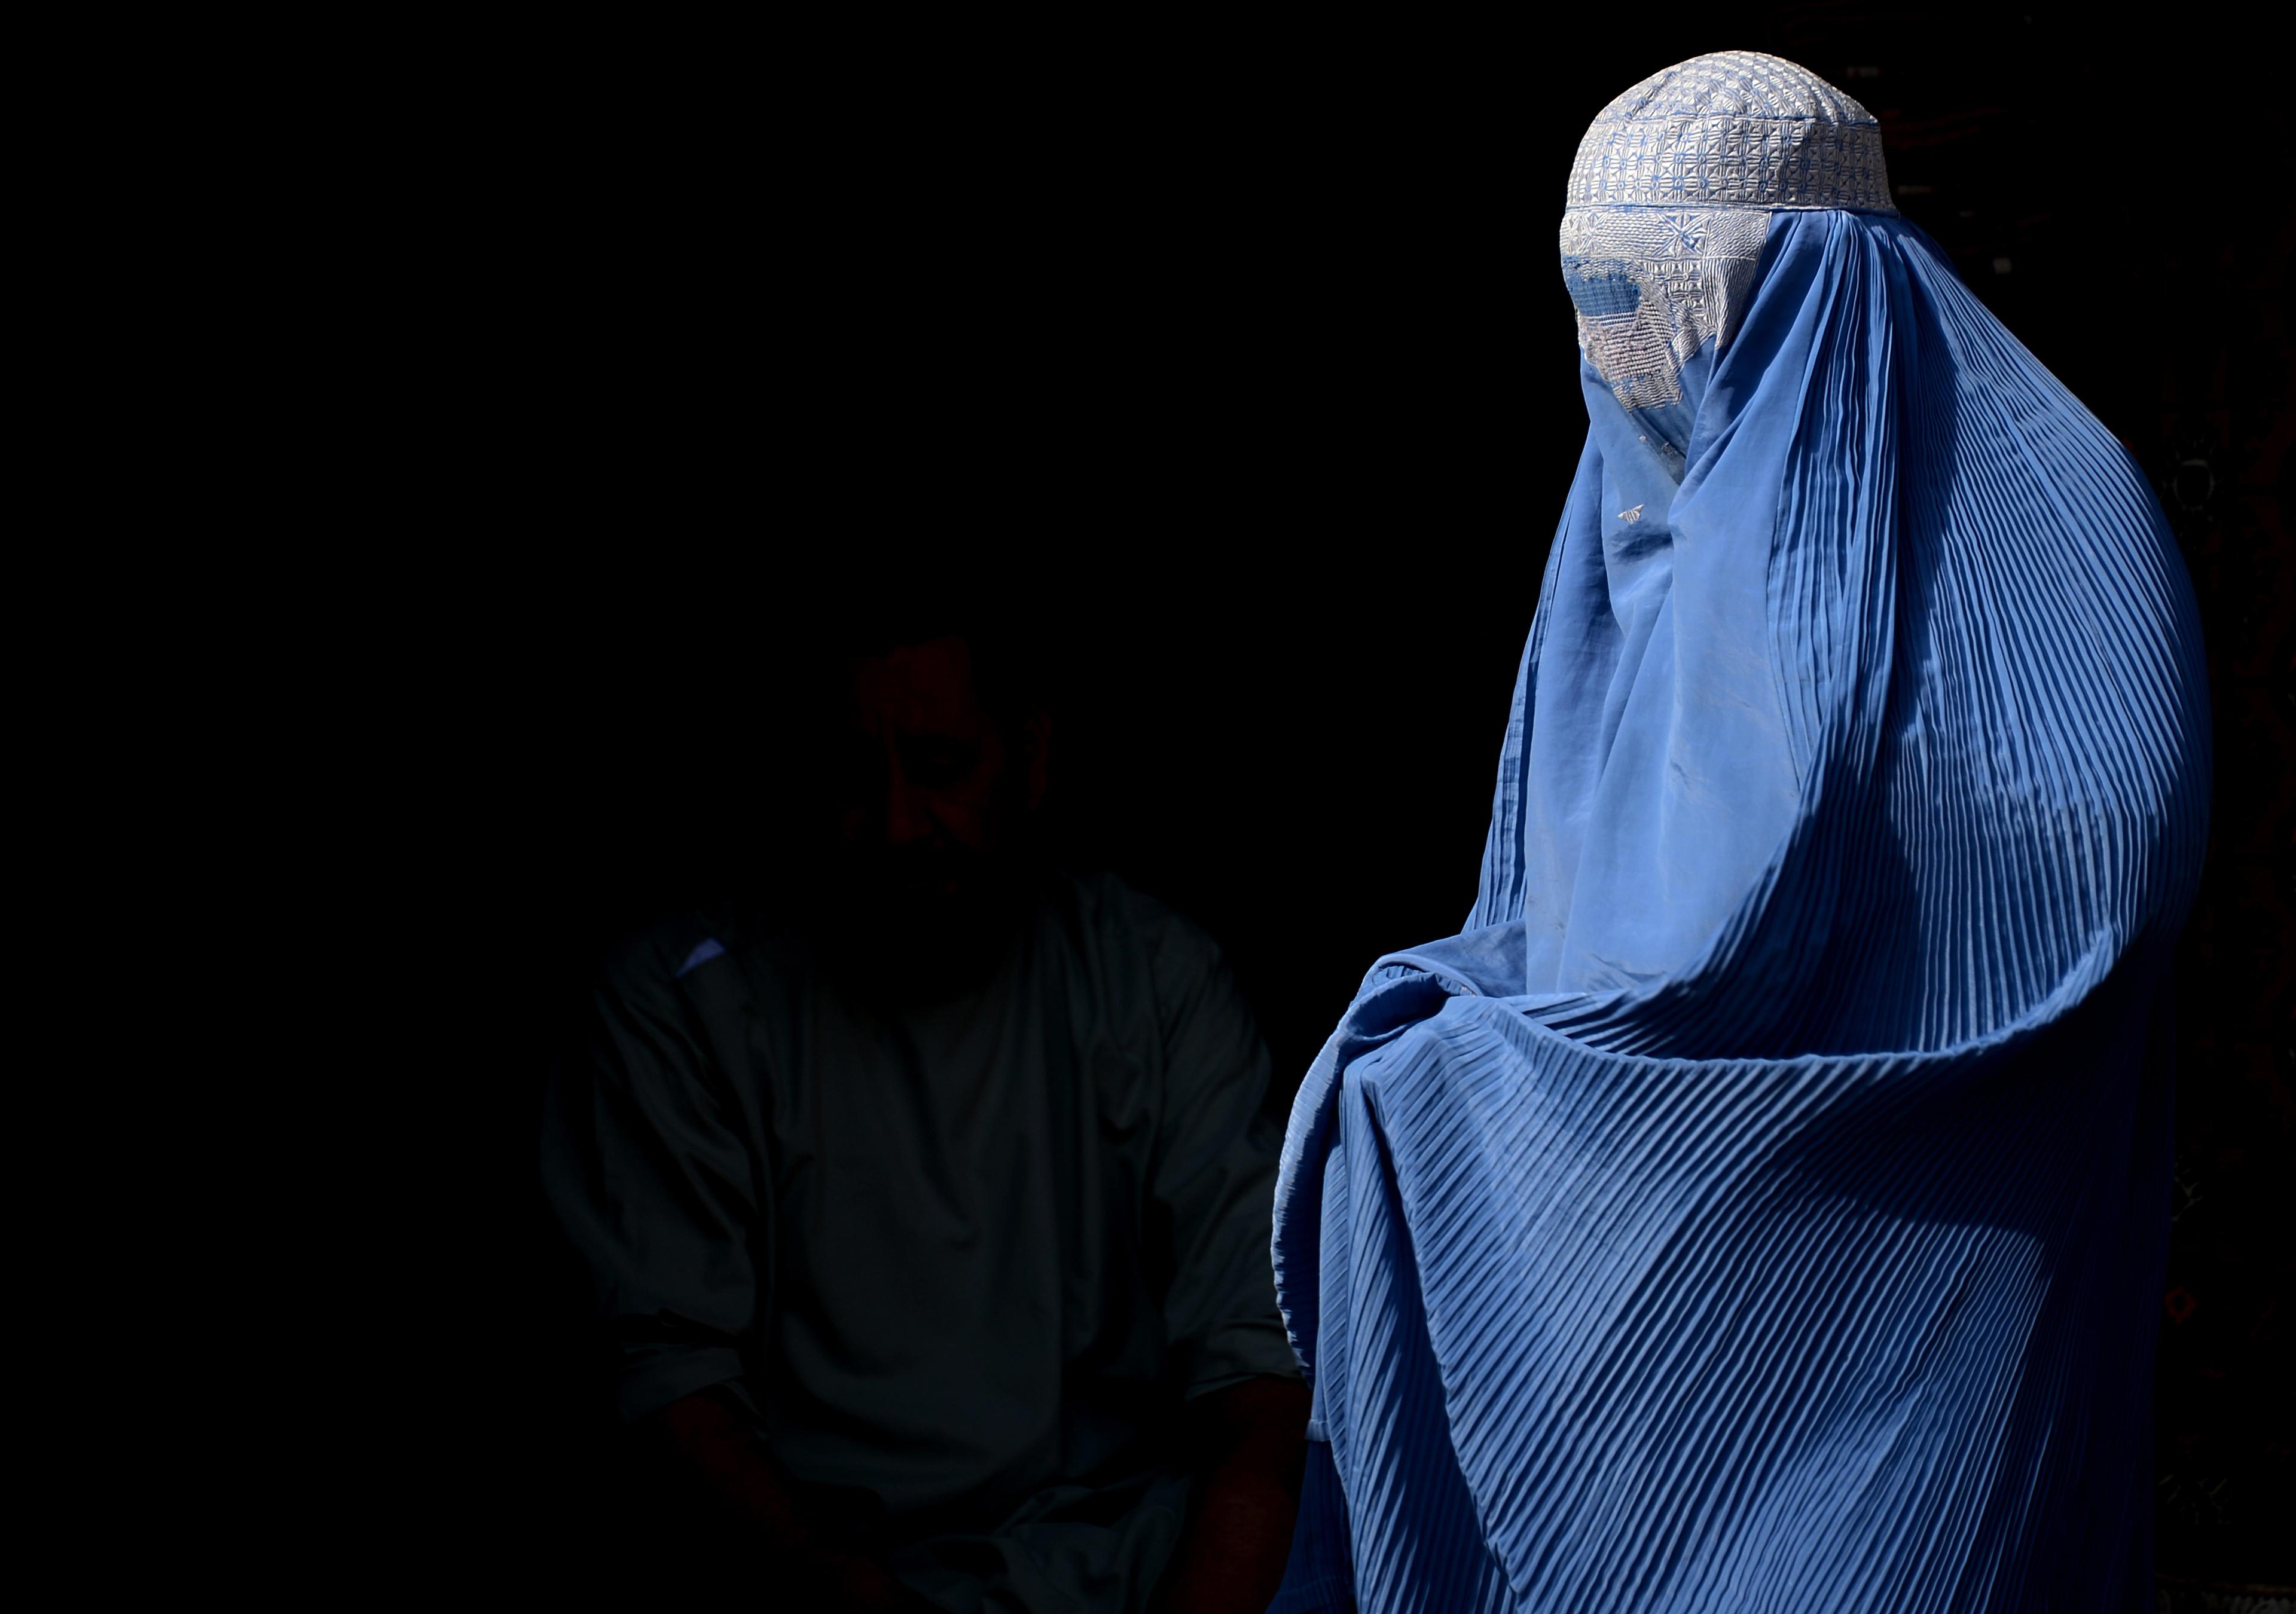 Den heltäckande burkan, som främst används av muslimska kvinnor i Afghanistan, har förbjuditis i fler europeiska länder. Nu planerar Norge ett förbud mot plagget i skolorna. (Foto: Aref Karimi/AFP/Getty Images)